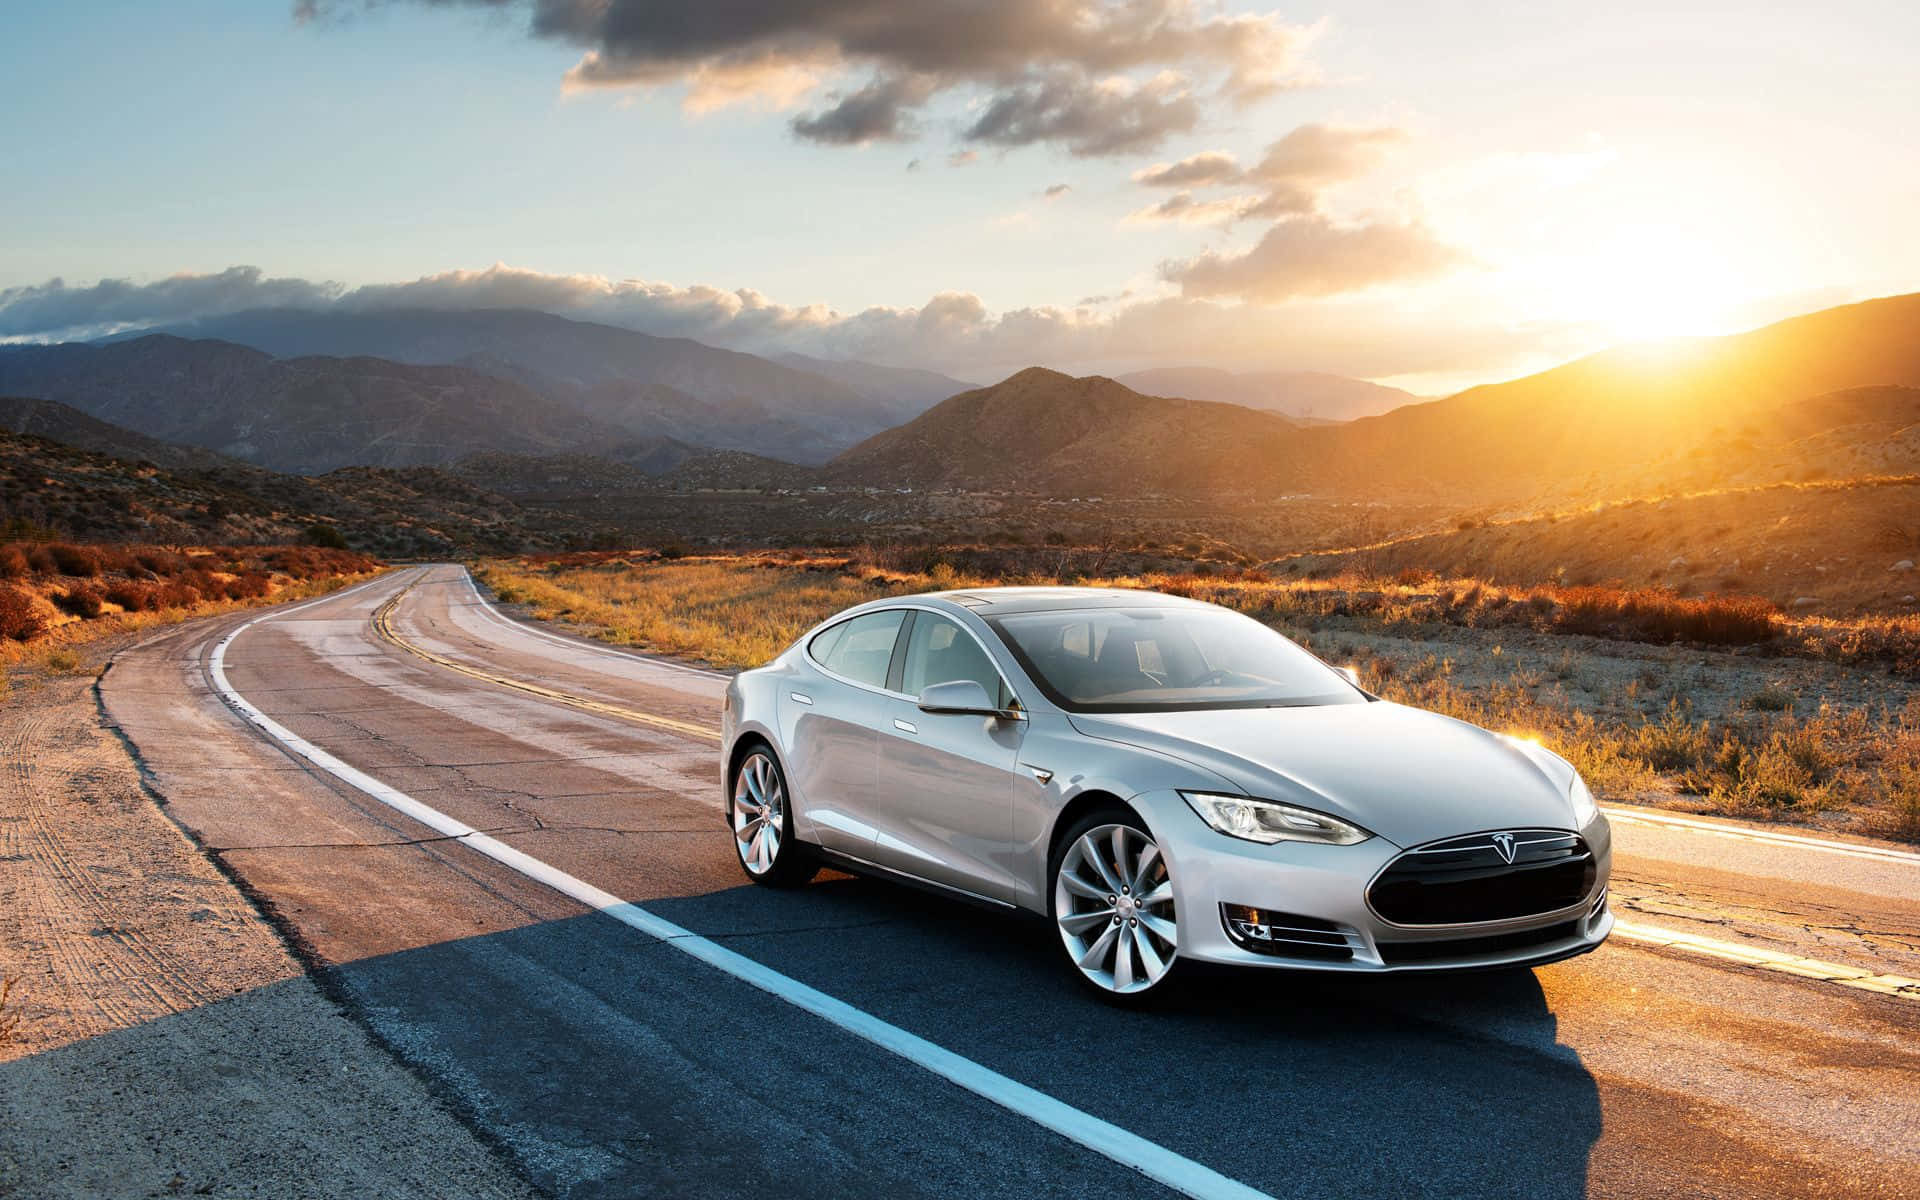 Teslamodel S Fährt Auf Einer Straße Durch Die Wüste.